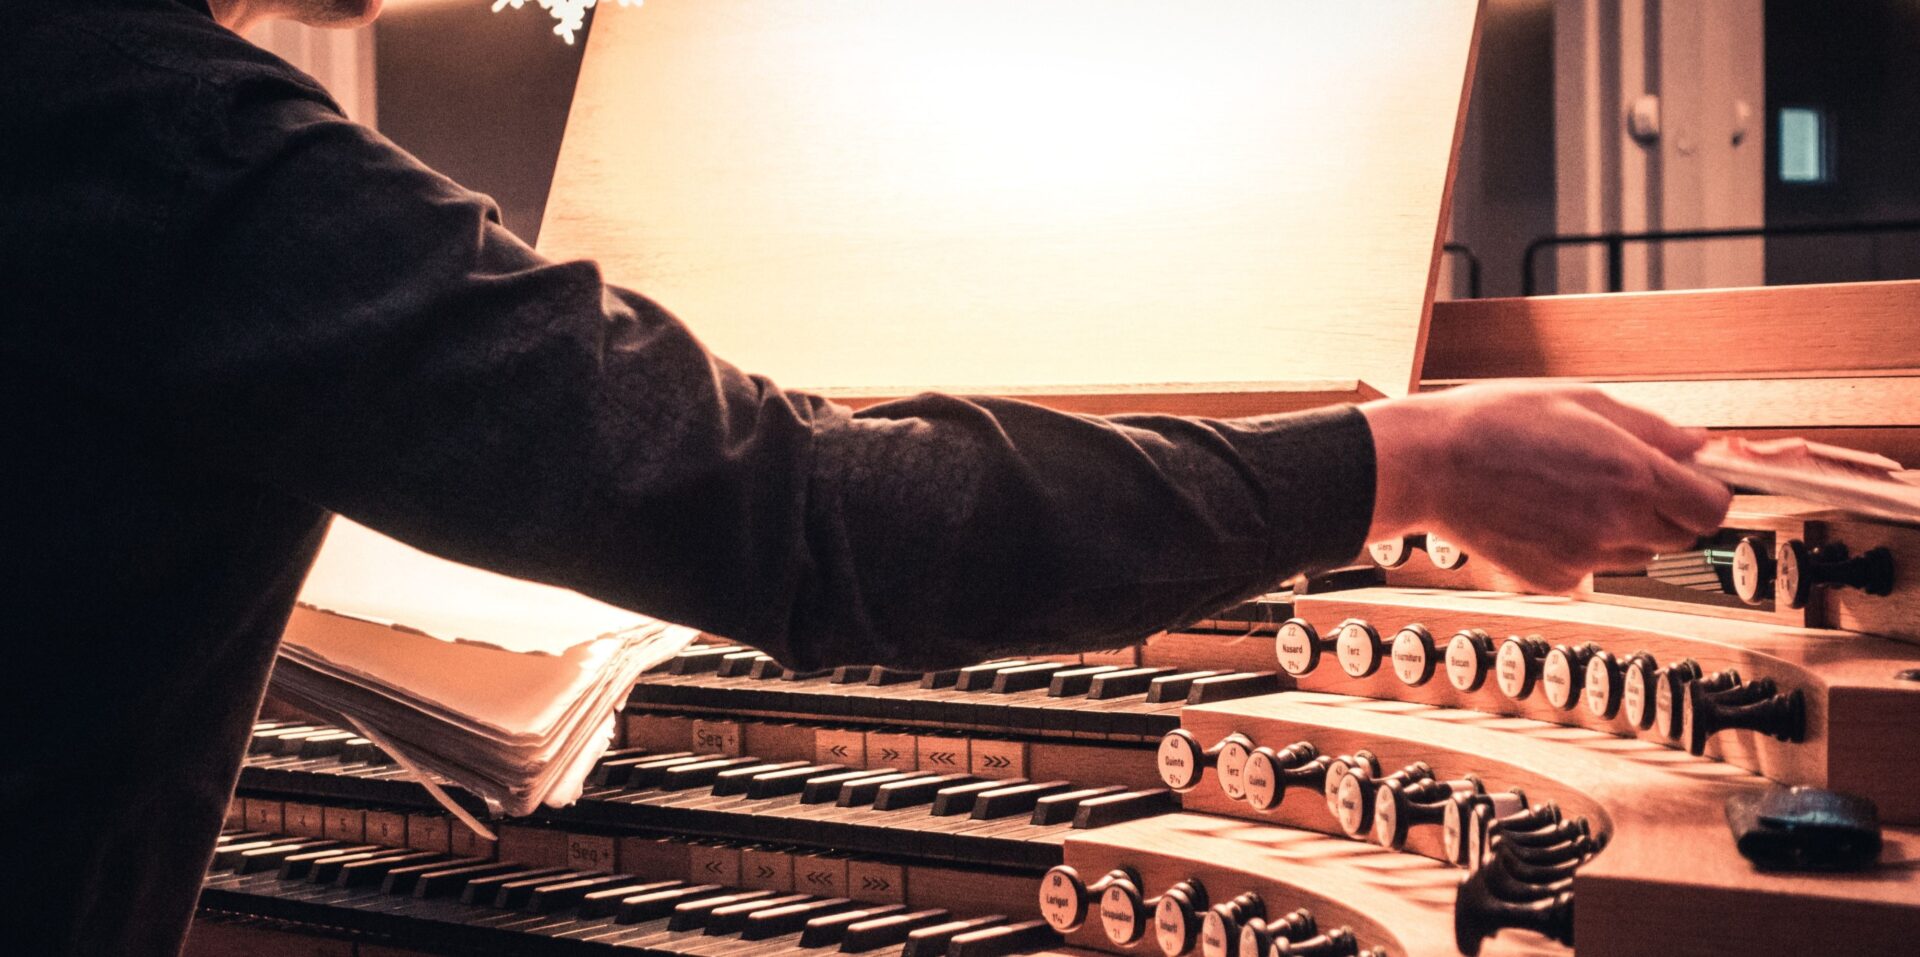 L'orgue sera à l'honneur à l'Abbaye de Saint-Maurice (Photo d'illustration: Hao Zhang sur Unsplash)